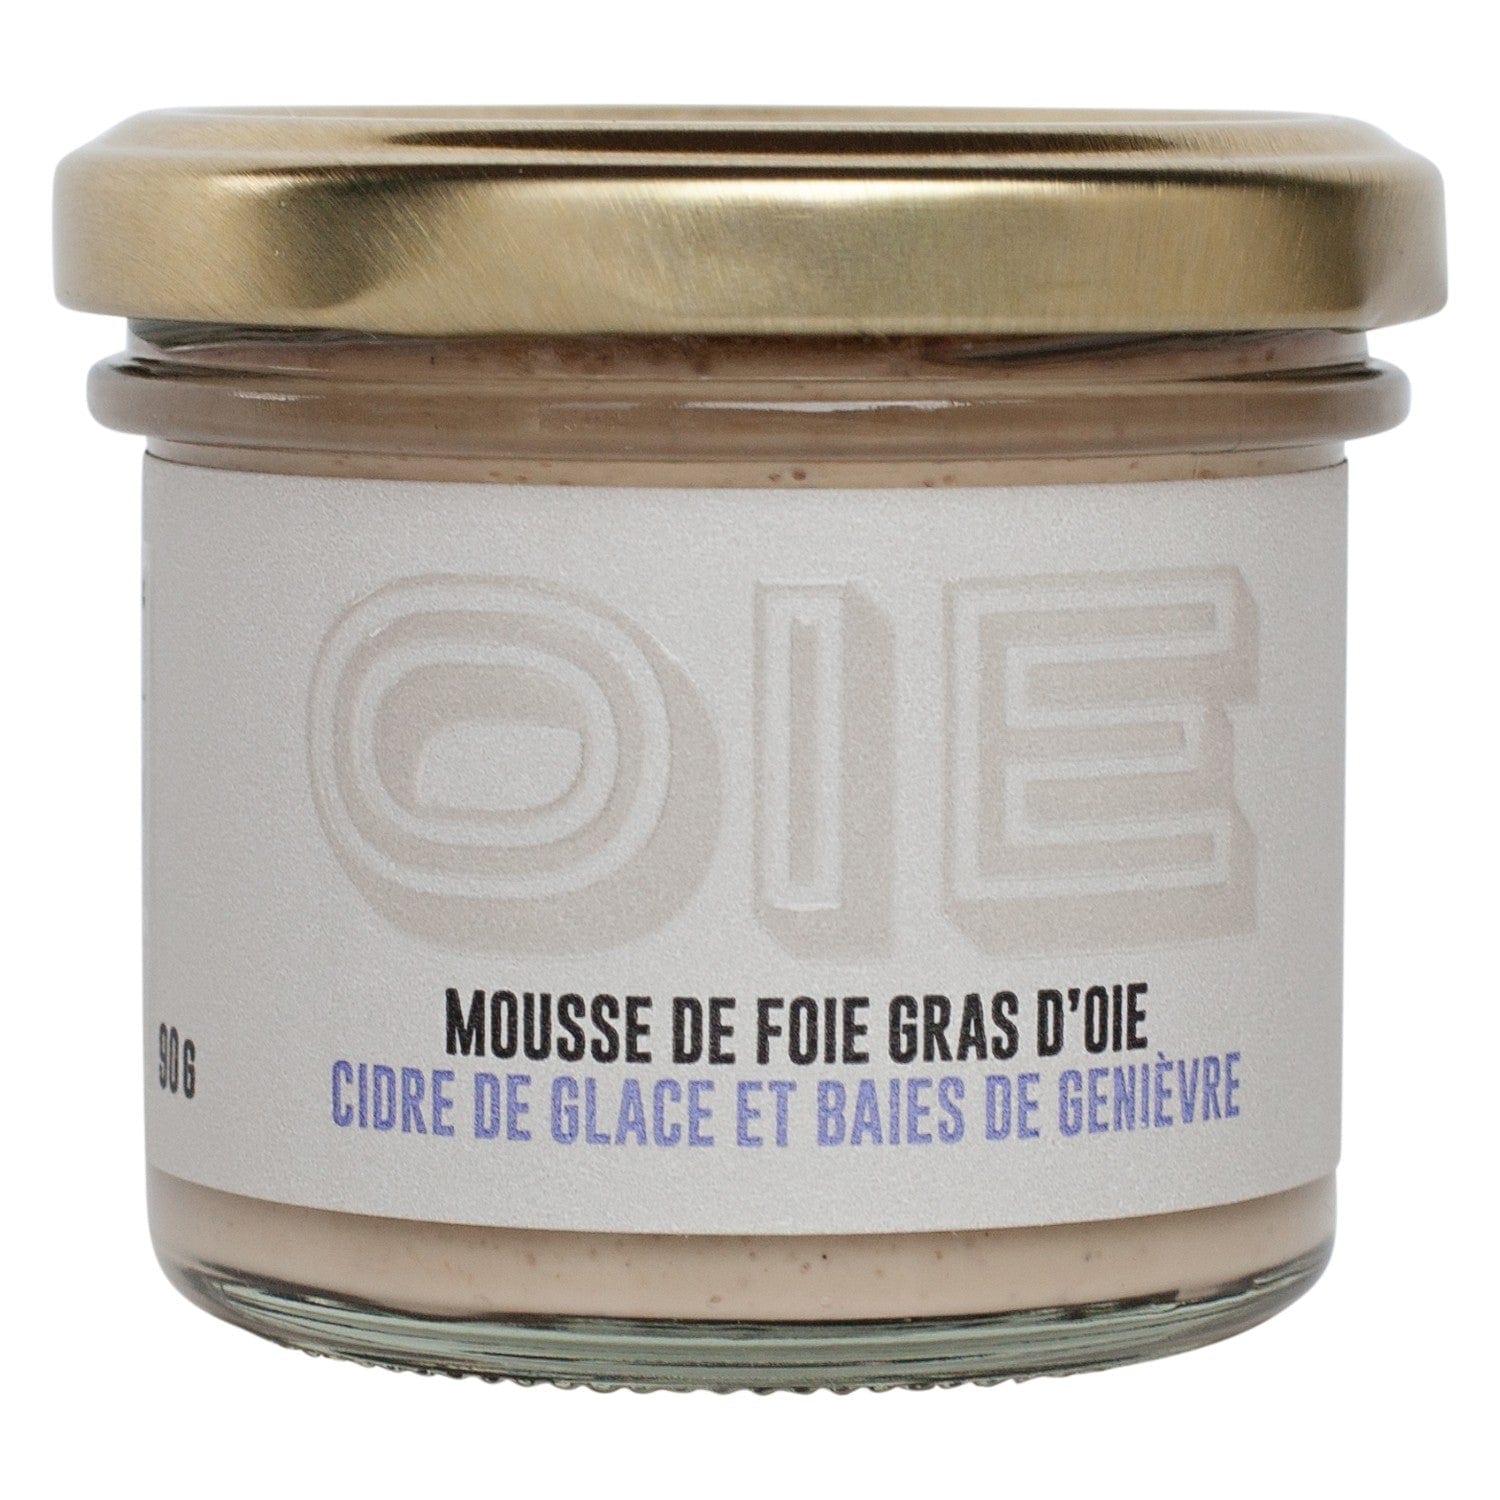 Goose foie gras mousse - Ice cider and juniper berries